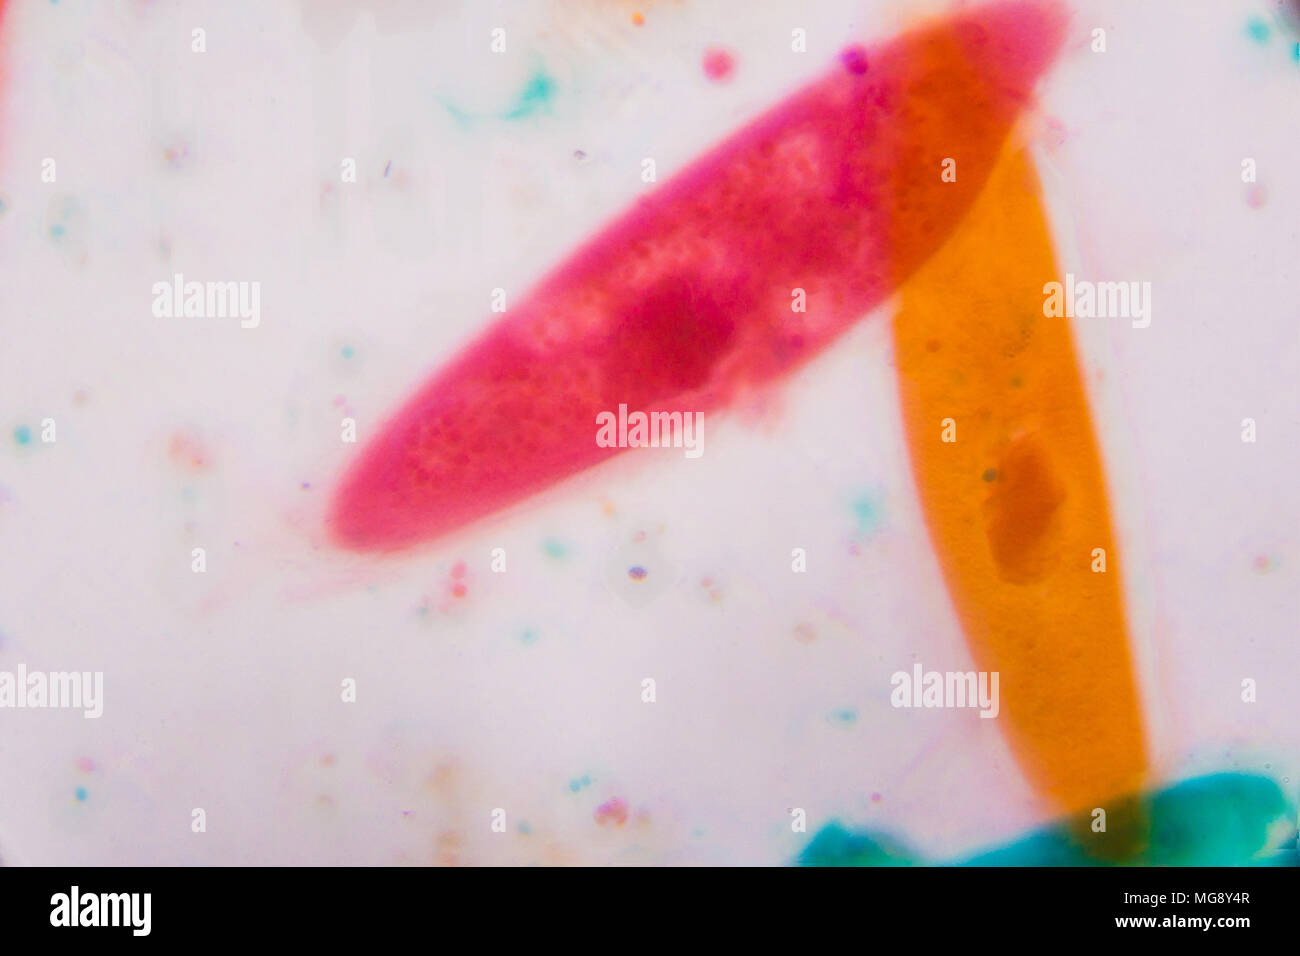 Paramecio caudatum sotto il microscopio - forme astratte in colore verde, rosso, arancione e marrone su sfondo bianco. Foto Stock